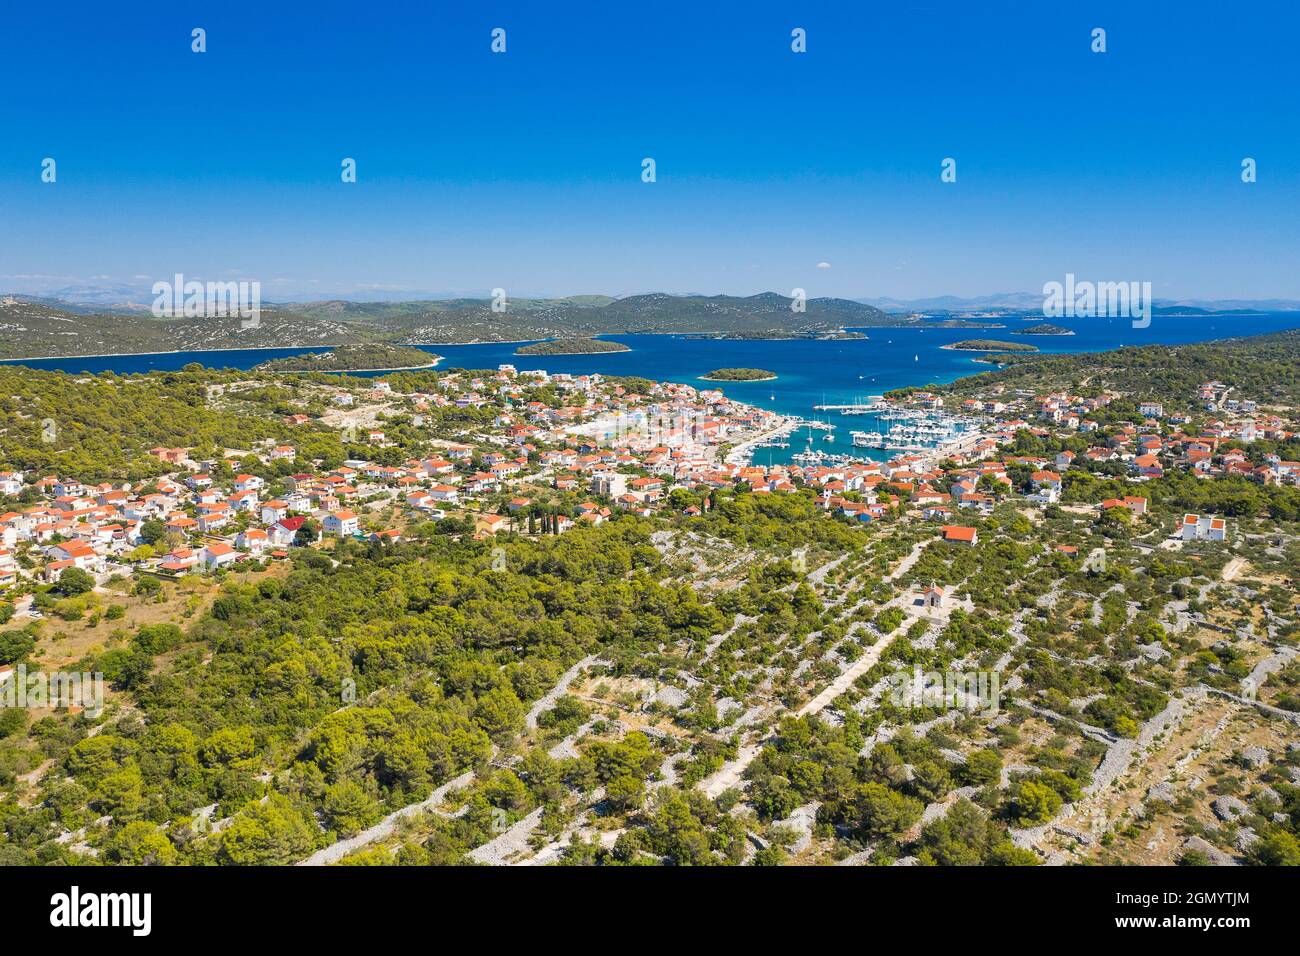 Town of Jezera, Murter island archipelago, Dalmatia, Croatia, aerial view Stock Photo